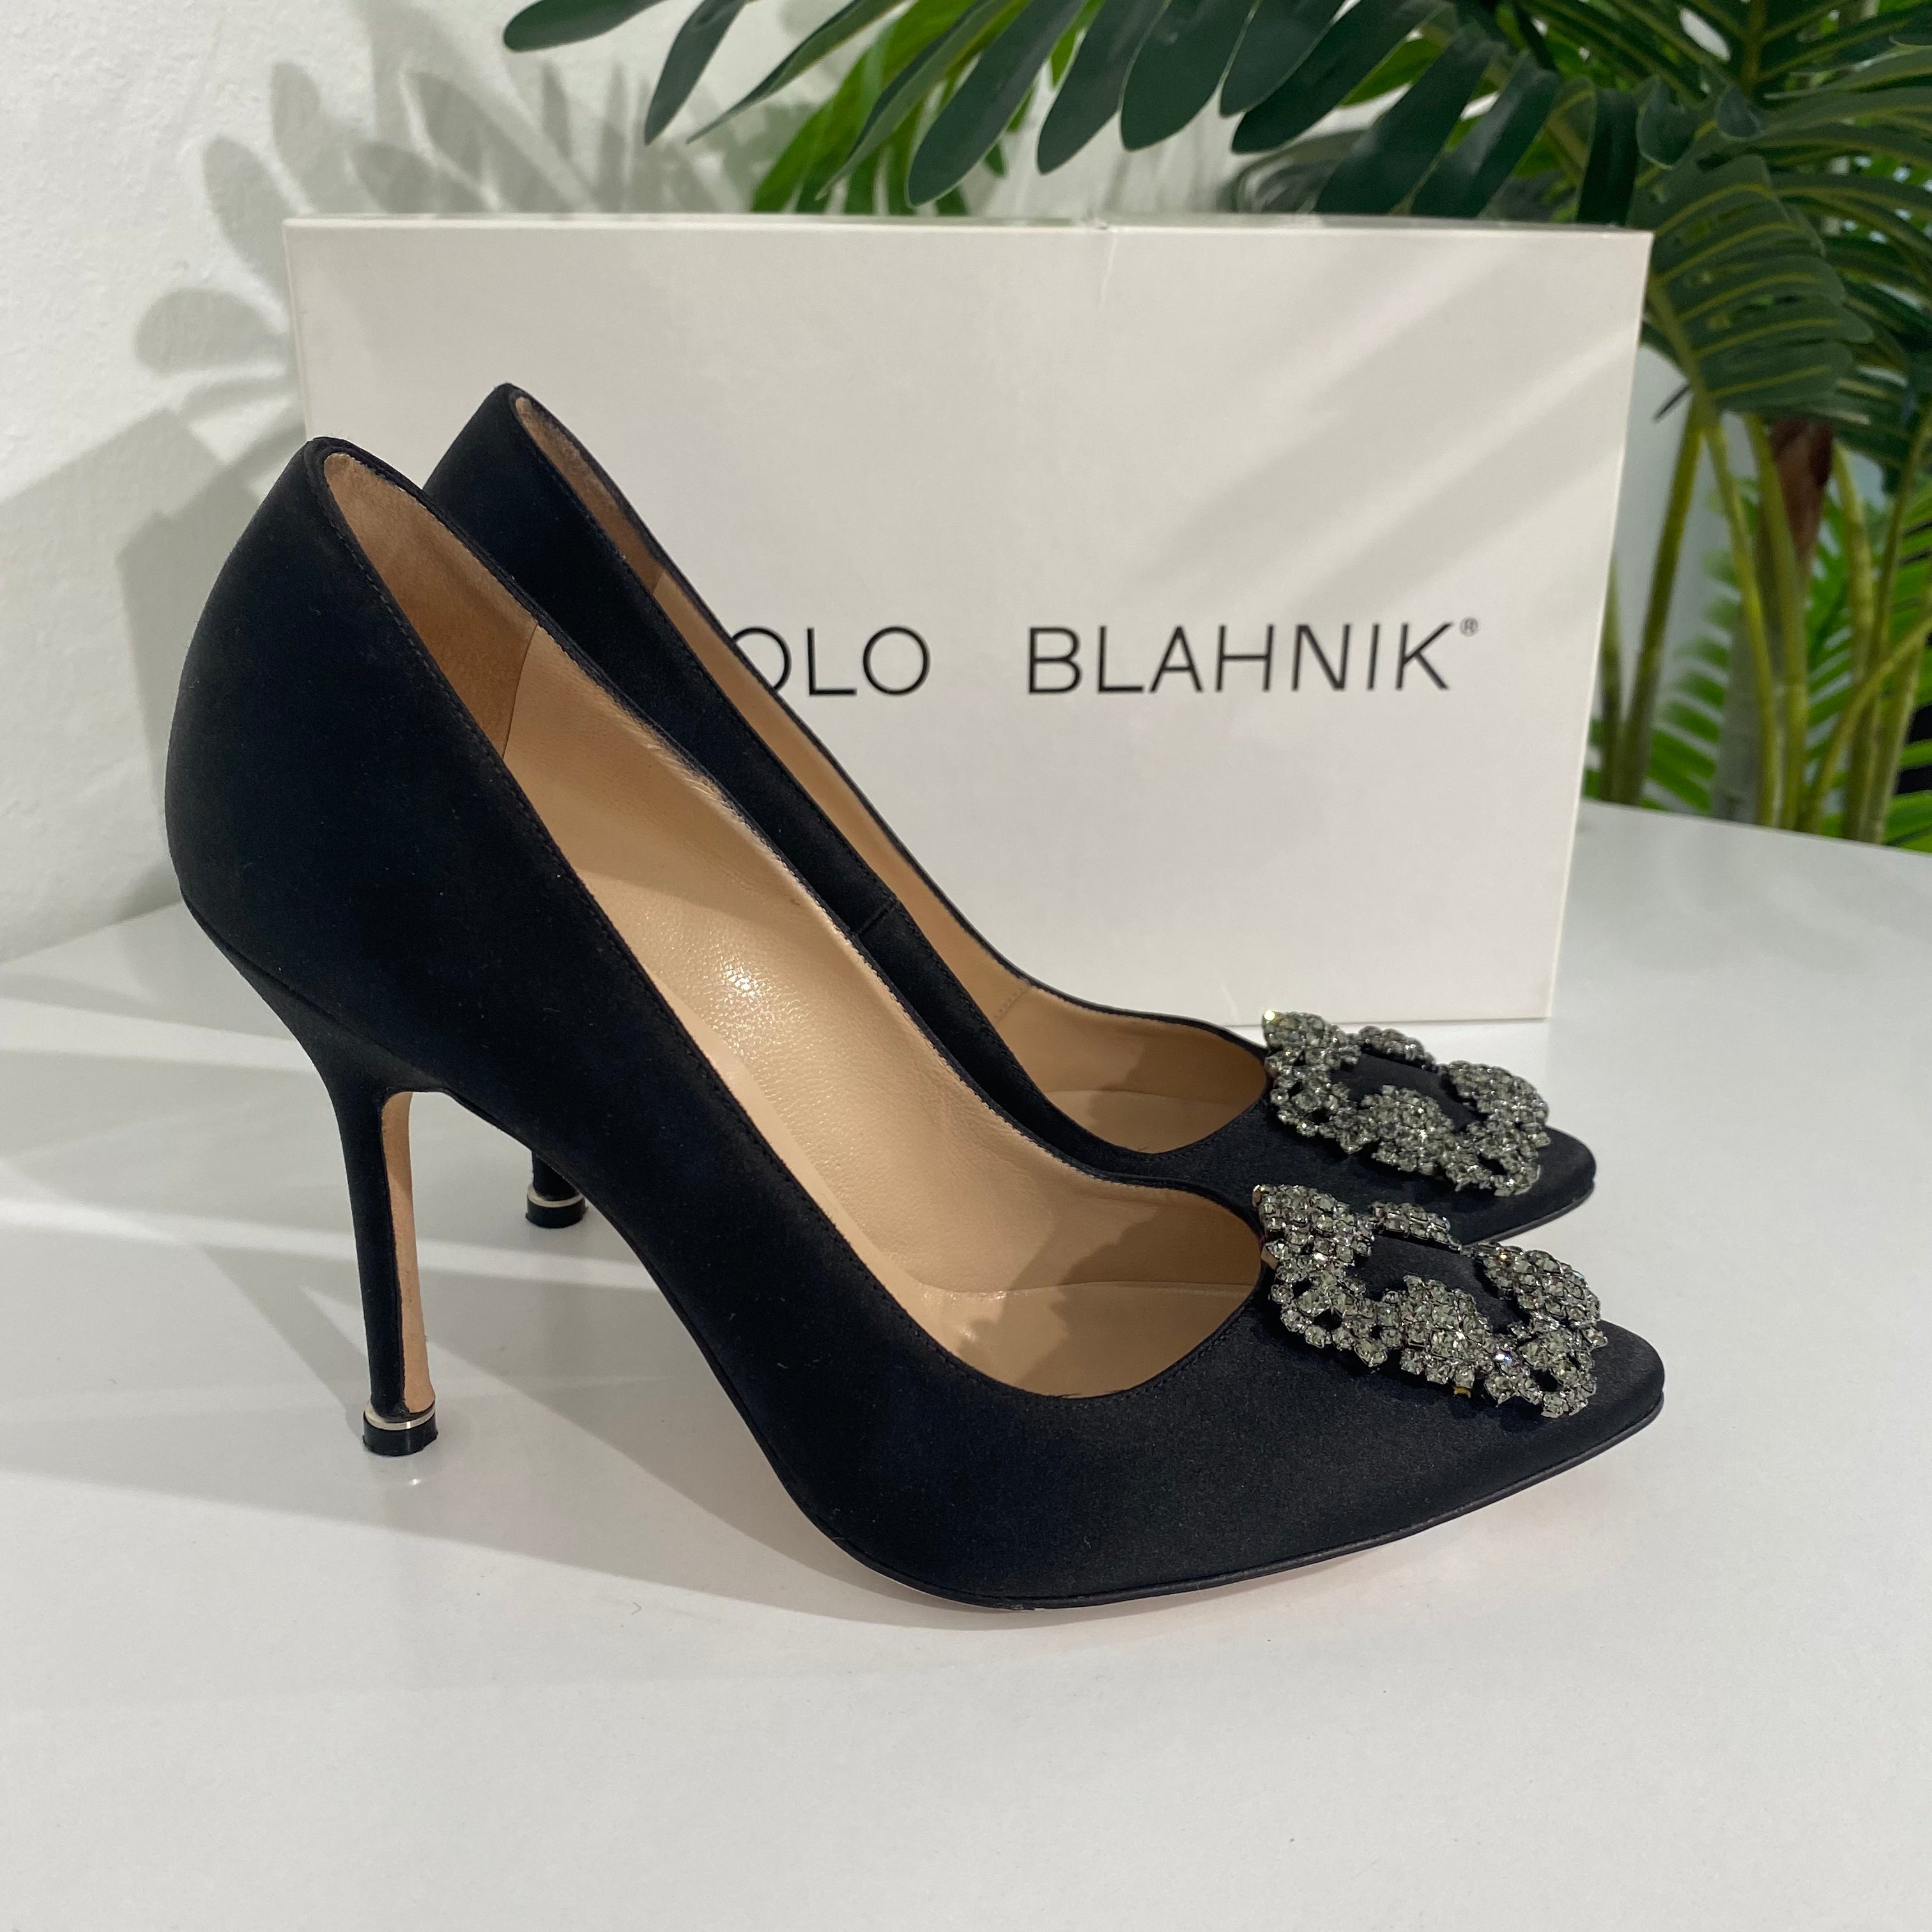 Manolo Blahnik Black Hangisi Heels